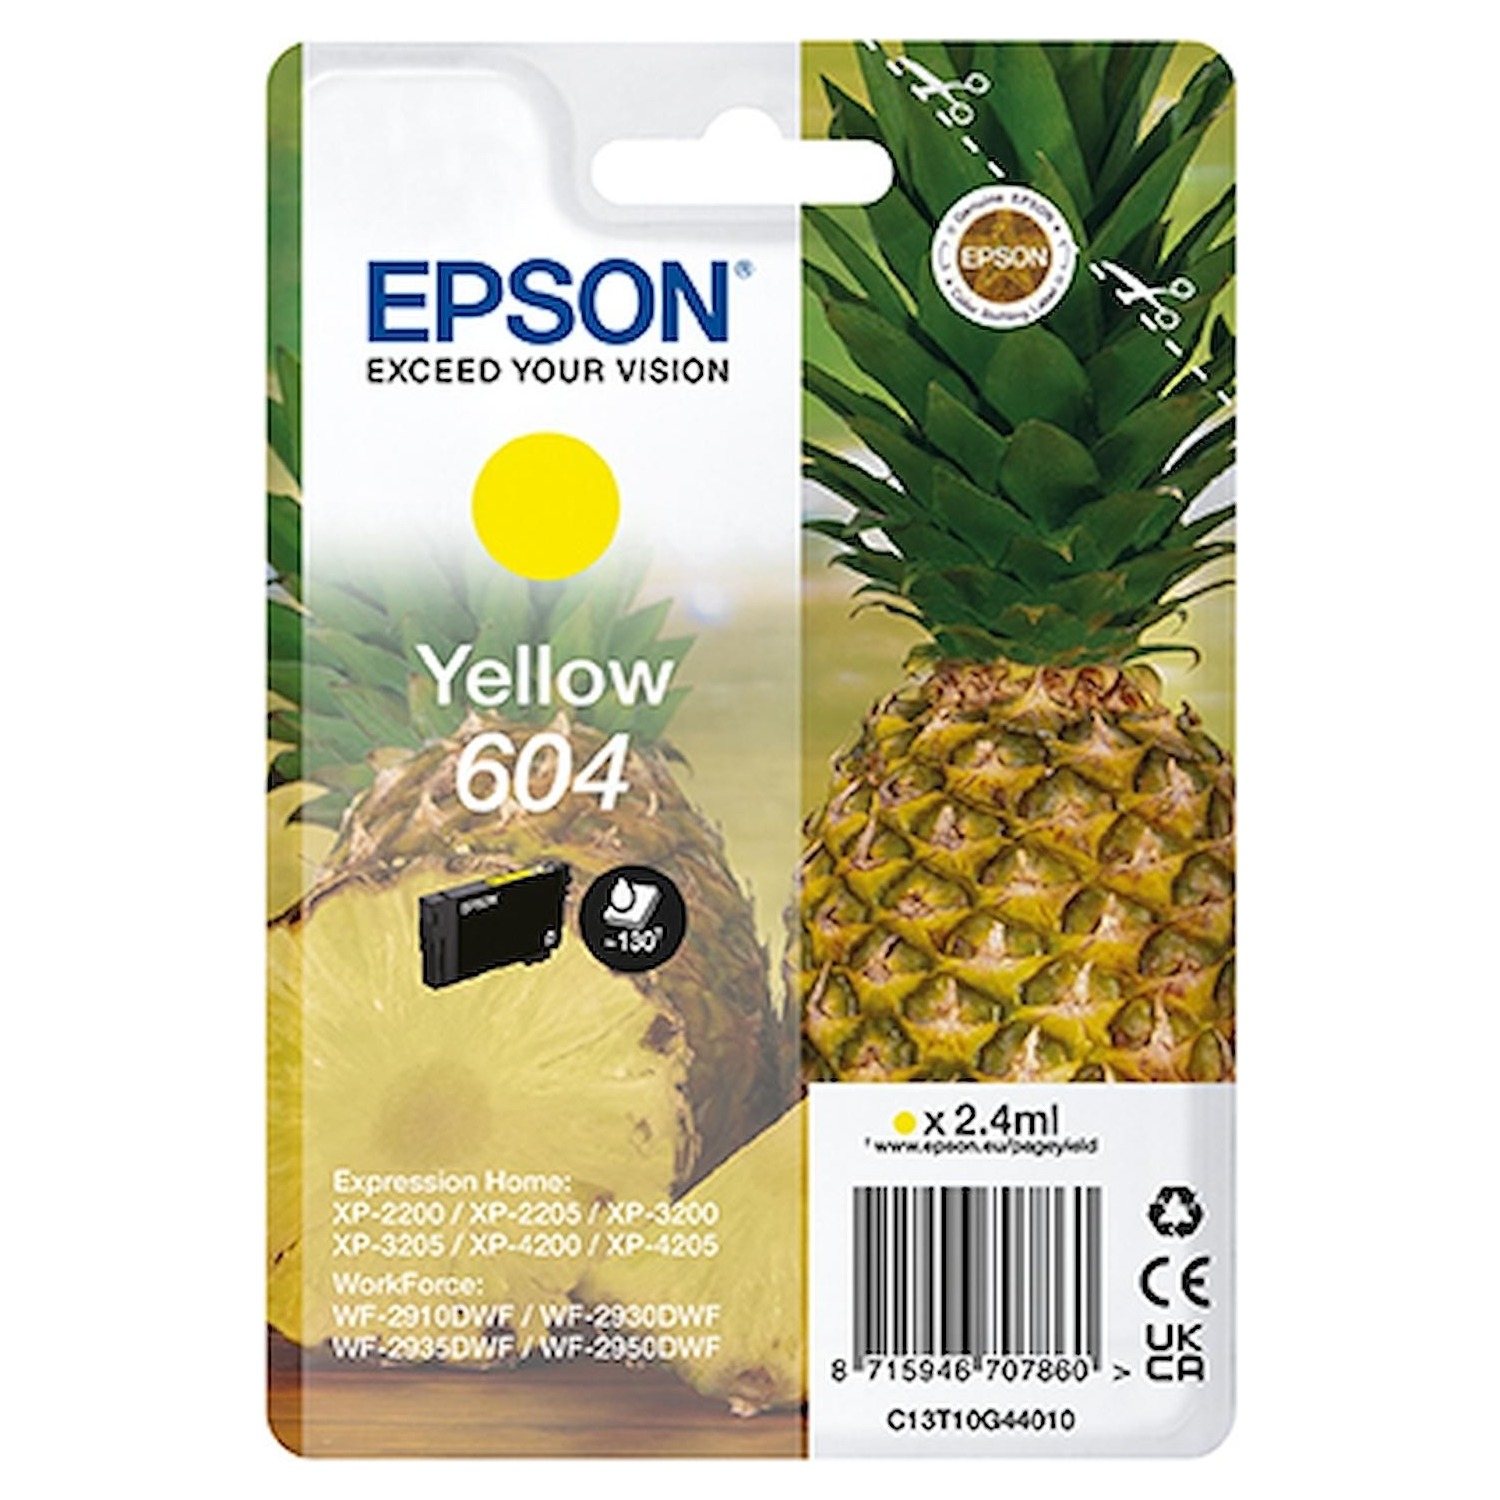 Immagine per Cartuccia Epson serie ananas 604 gialla           per XP-2200 XP-2205 XP-3200 XP-3205 XP-4200 da DIMOStore